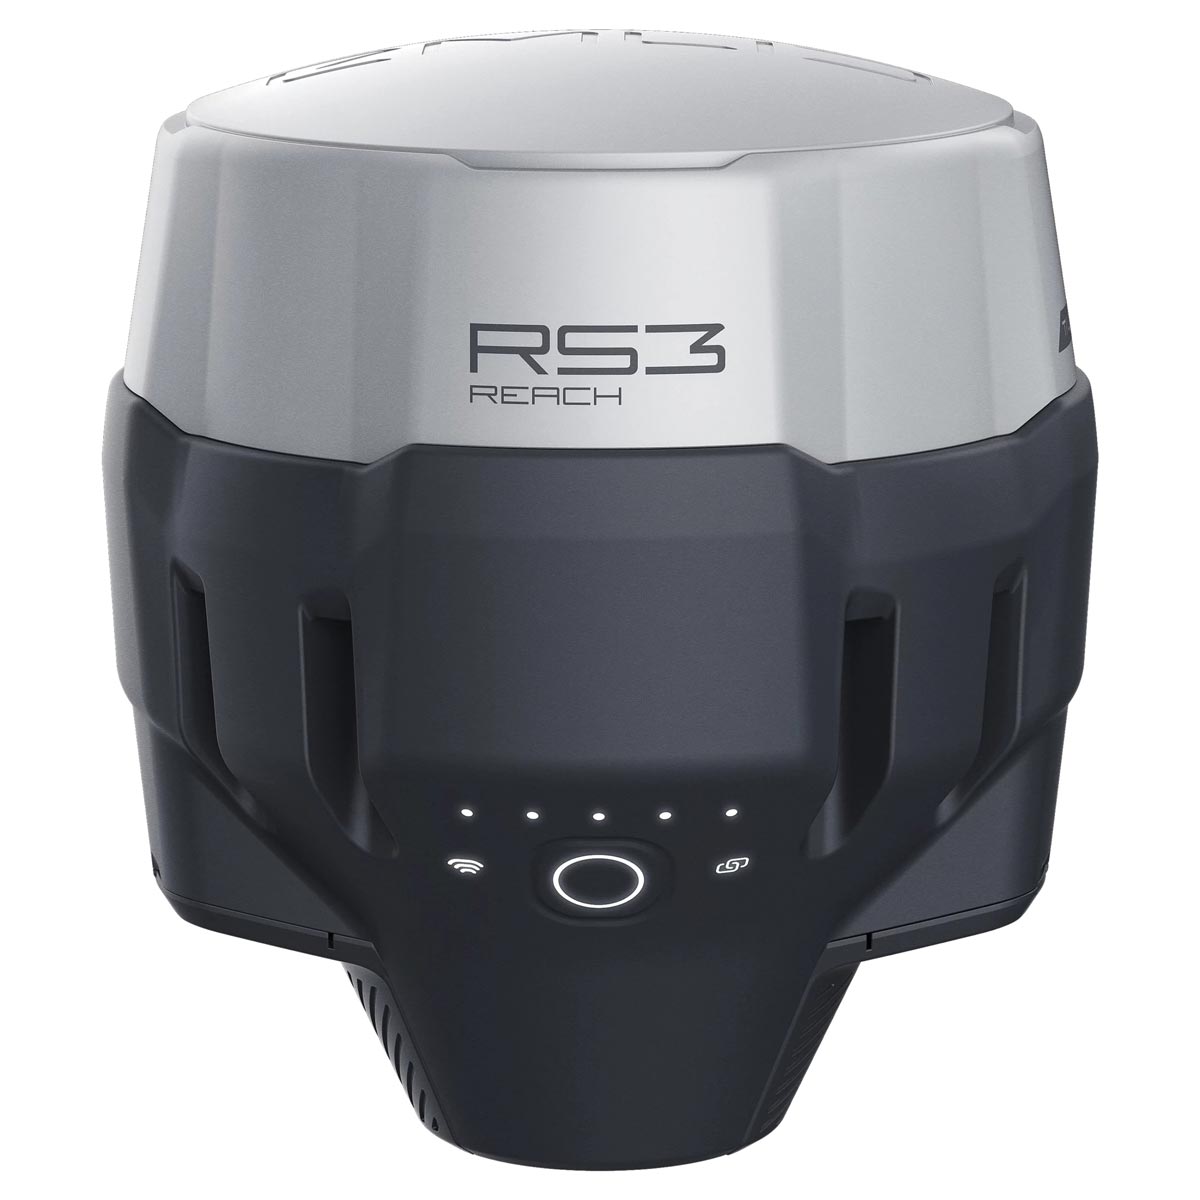 GNSS-Empfänger Reach RS3 von EMLID 